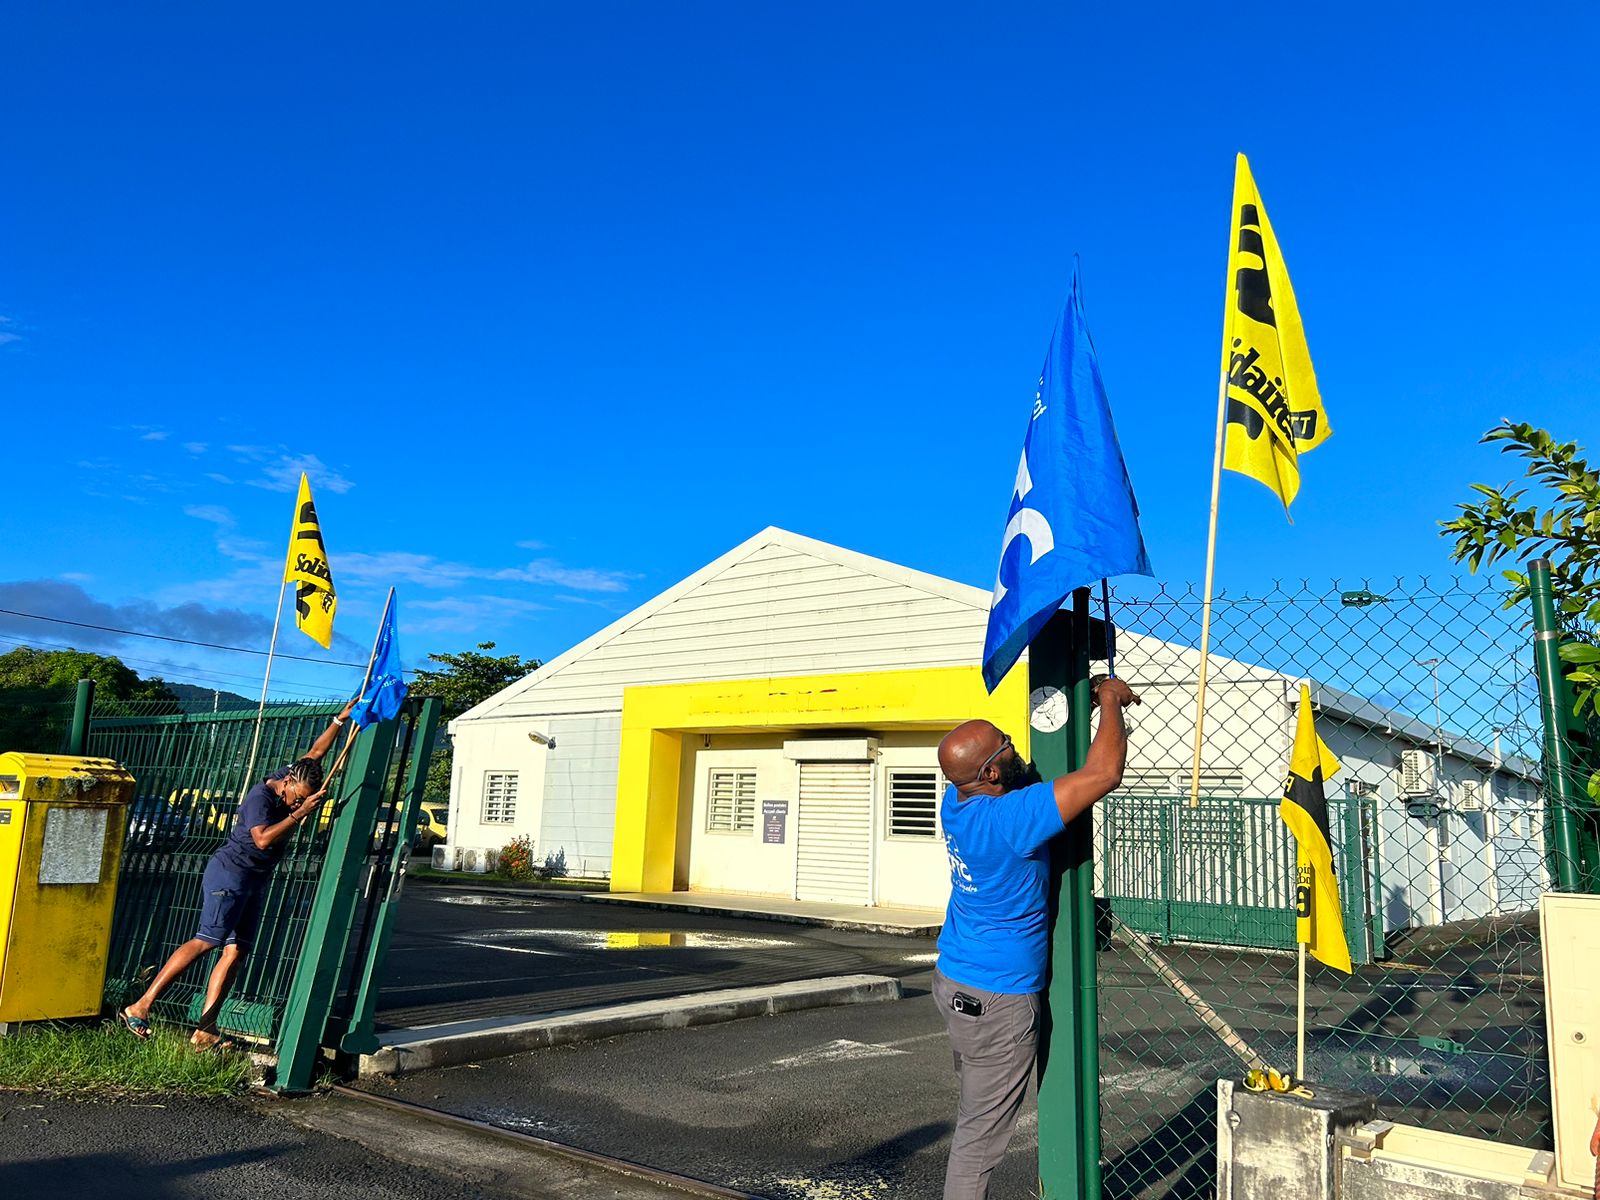     Fin de la grève dans les centres courrier de La Poste à Capesterre et Sainte-Rose

